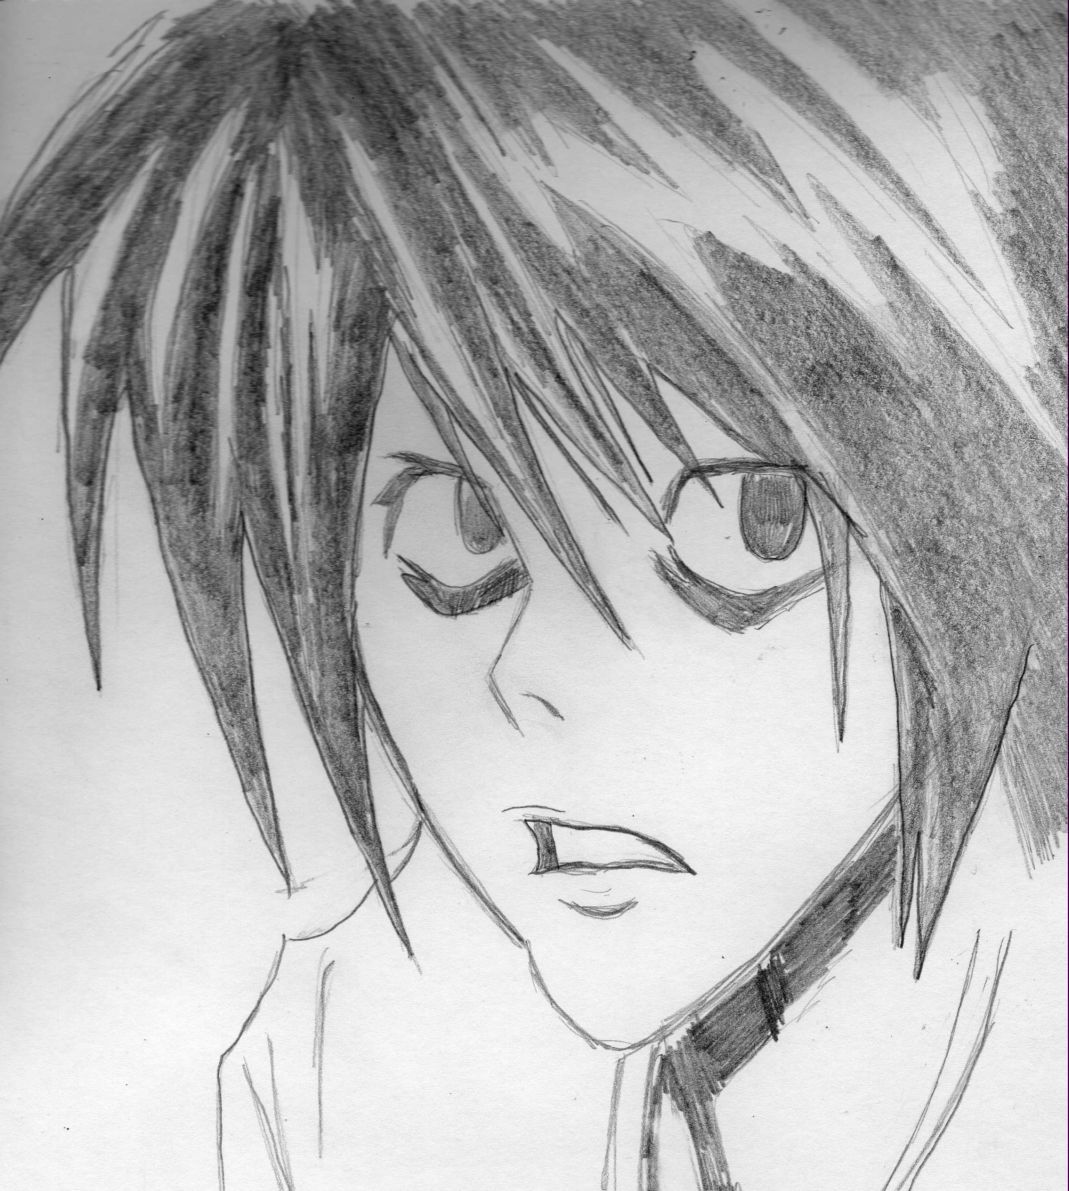 Ryuzaki sketch by ladychaos